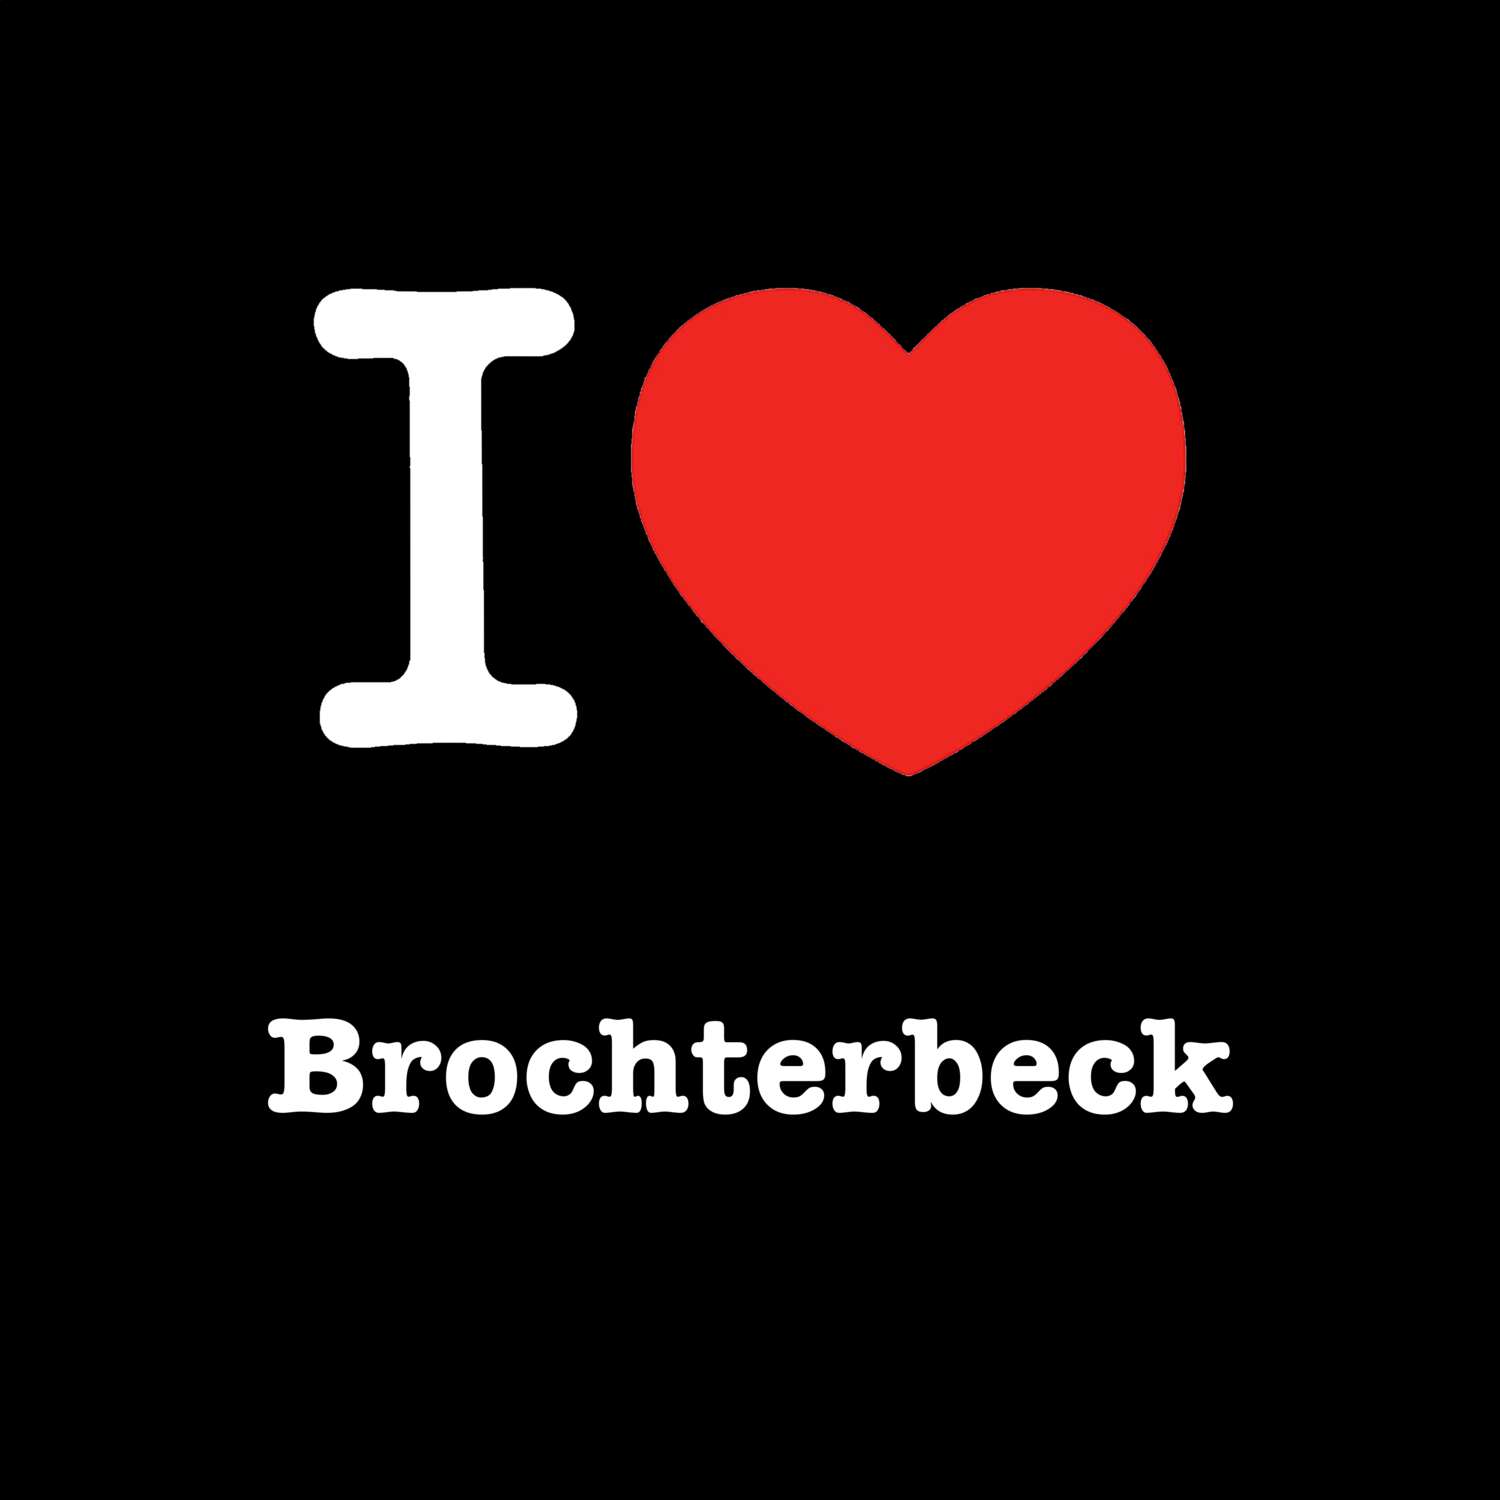 Brochterbeck T-Shirt »I love«